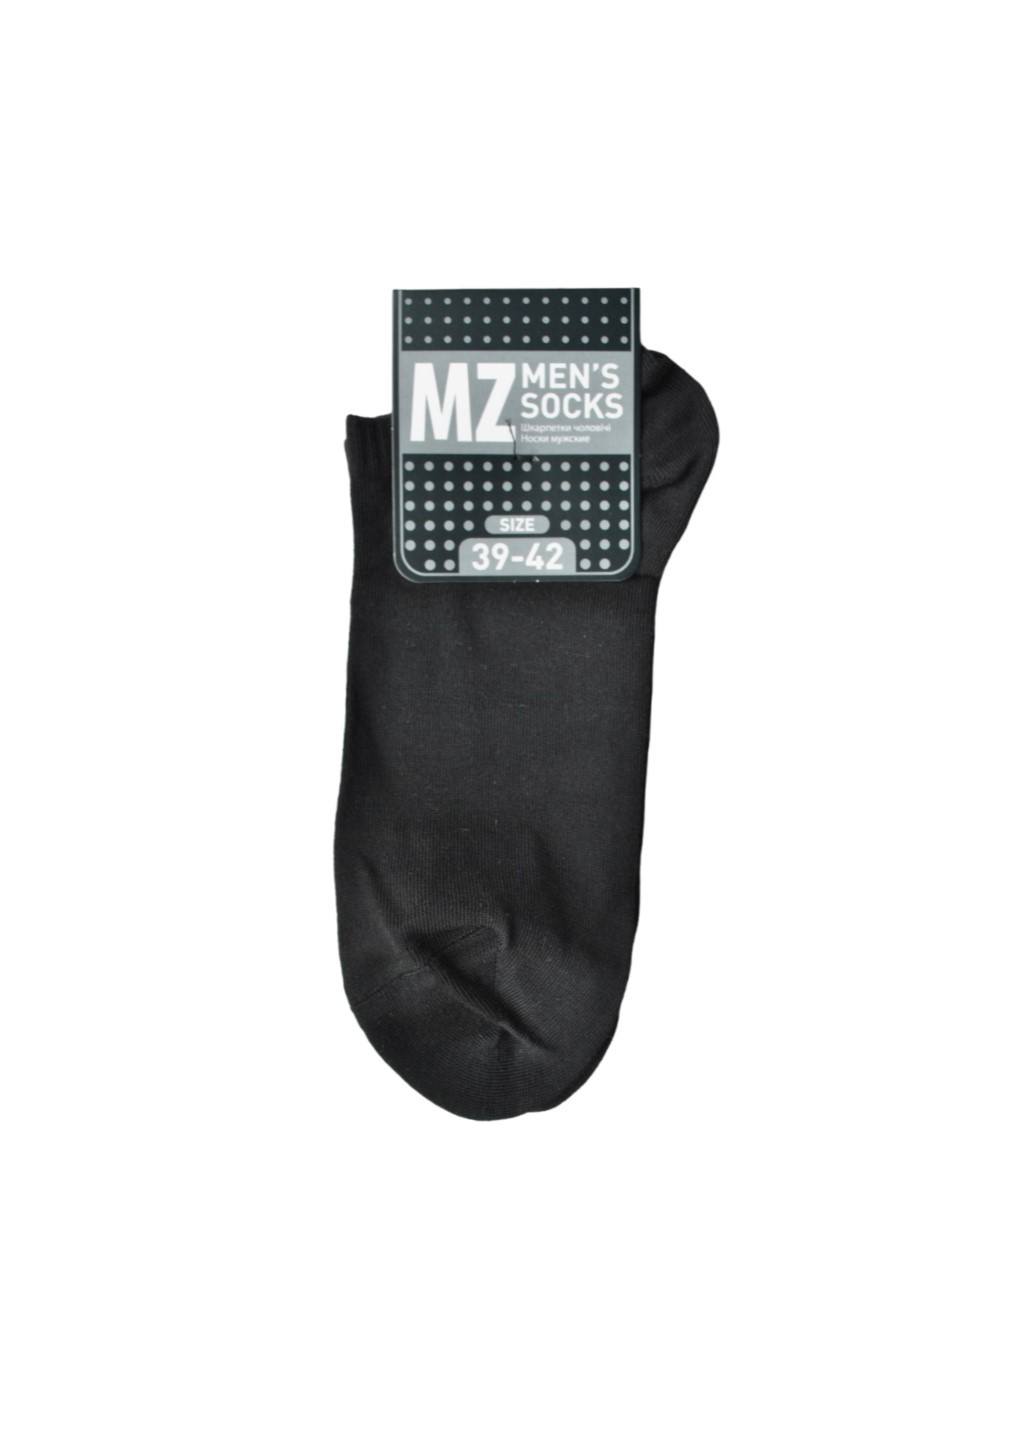 NTF Шкарпетки чол. (ультракороткі) MS1C/Sl-cl, р.39-42, black MZ ms1c-sl-cl (259643385)